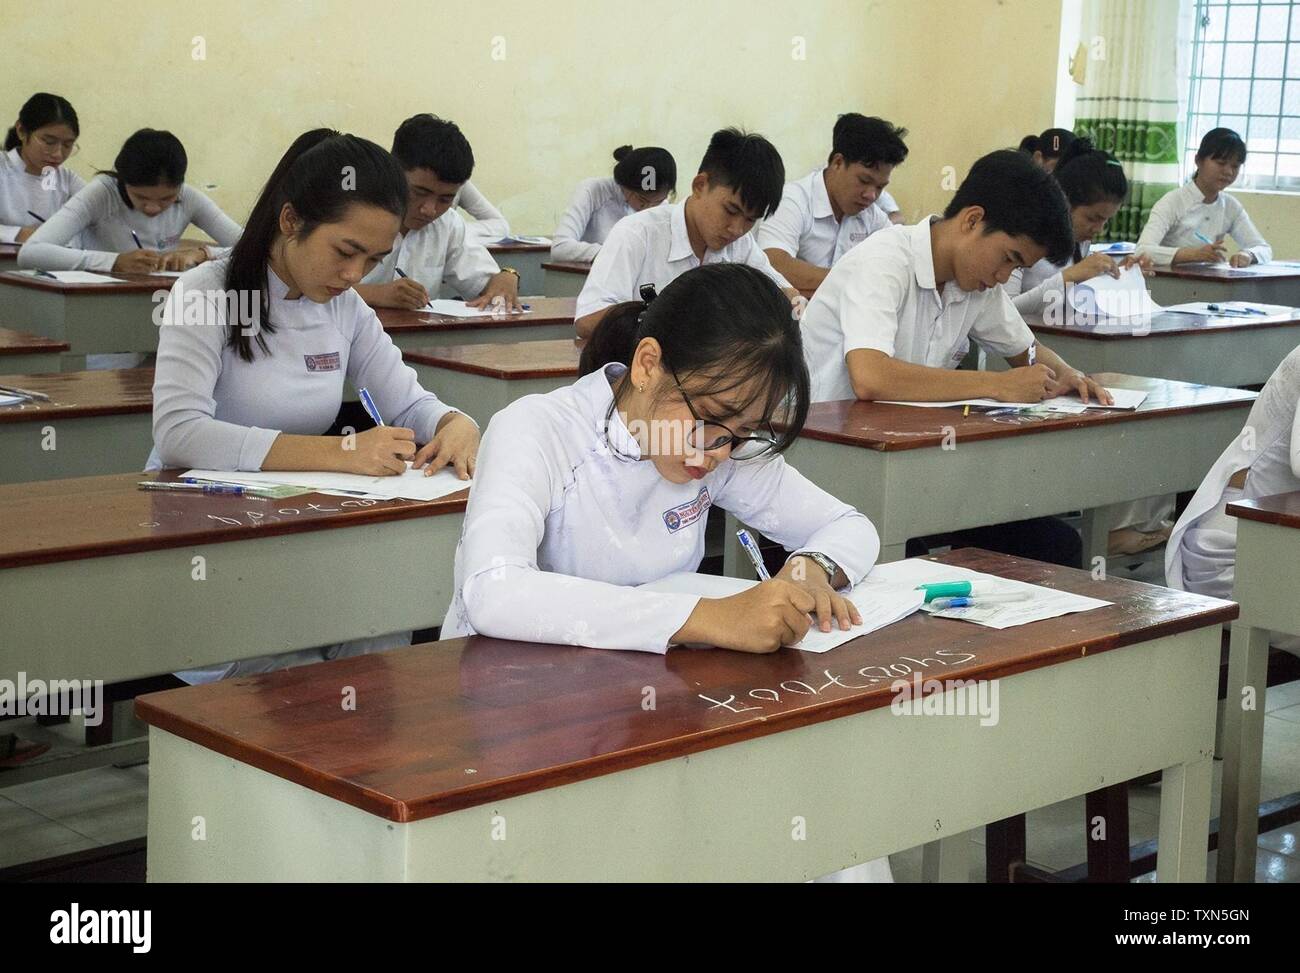 (190625) - Hanoi, 25. Juni 2019 (Xinhua) - High School Studenten nehmen die nationalen Abschlussprüfung auf eine Prüfung in der Provinz Kien Giang, Vietnam, 25. Juni 2019. Über 879,700 vietnamesische Schüler am Dienstag begann, saß für einen nationalen Abschlussprüfung, im Vergleich zu fast 925,800 Studenten im letzten Jahr, die lokalen Medien berichtet. (Xinhua / VNA) Stockfoto